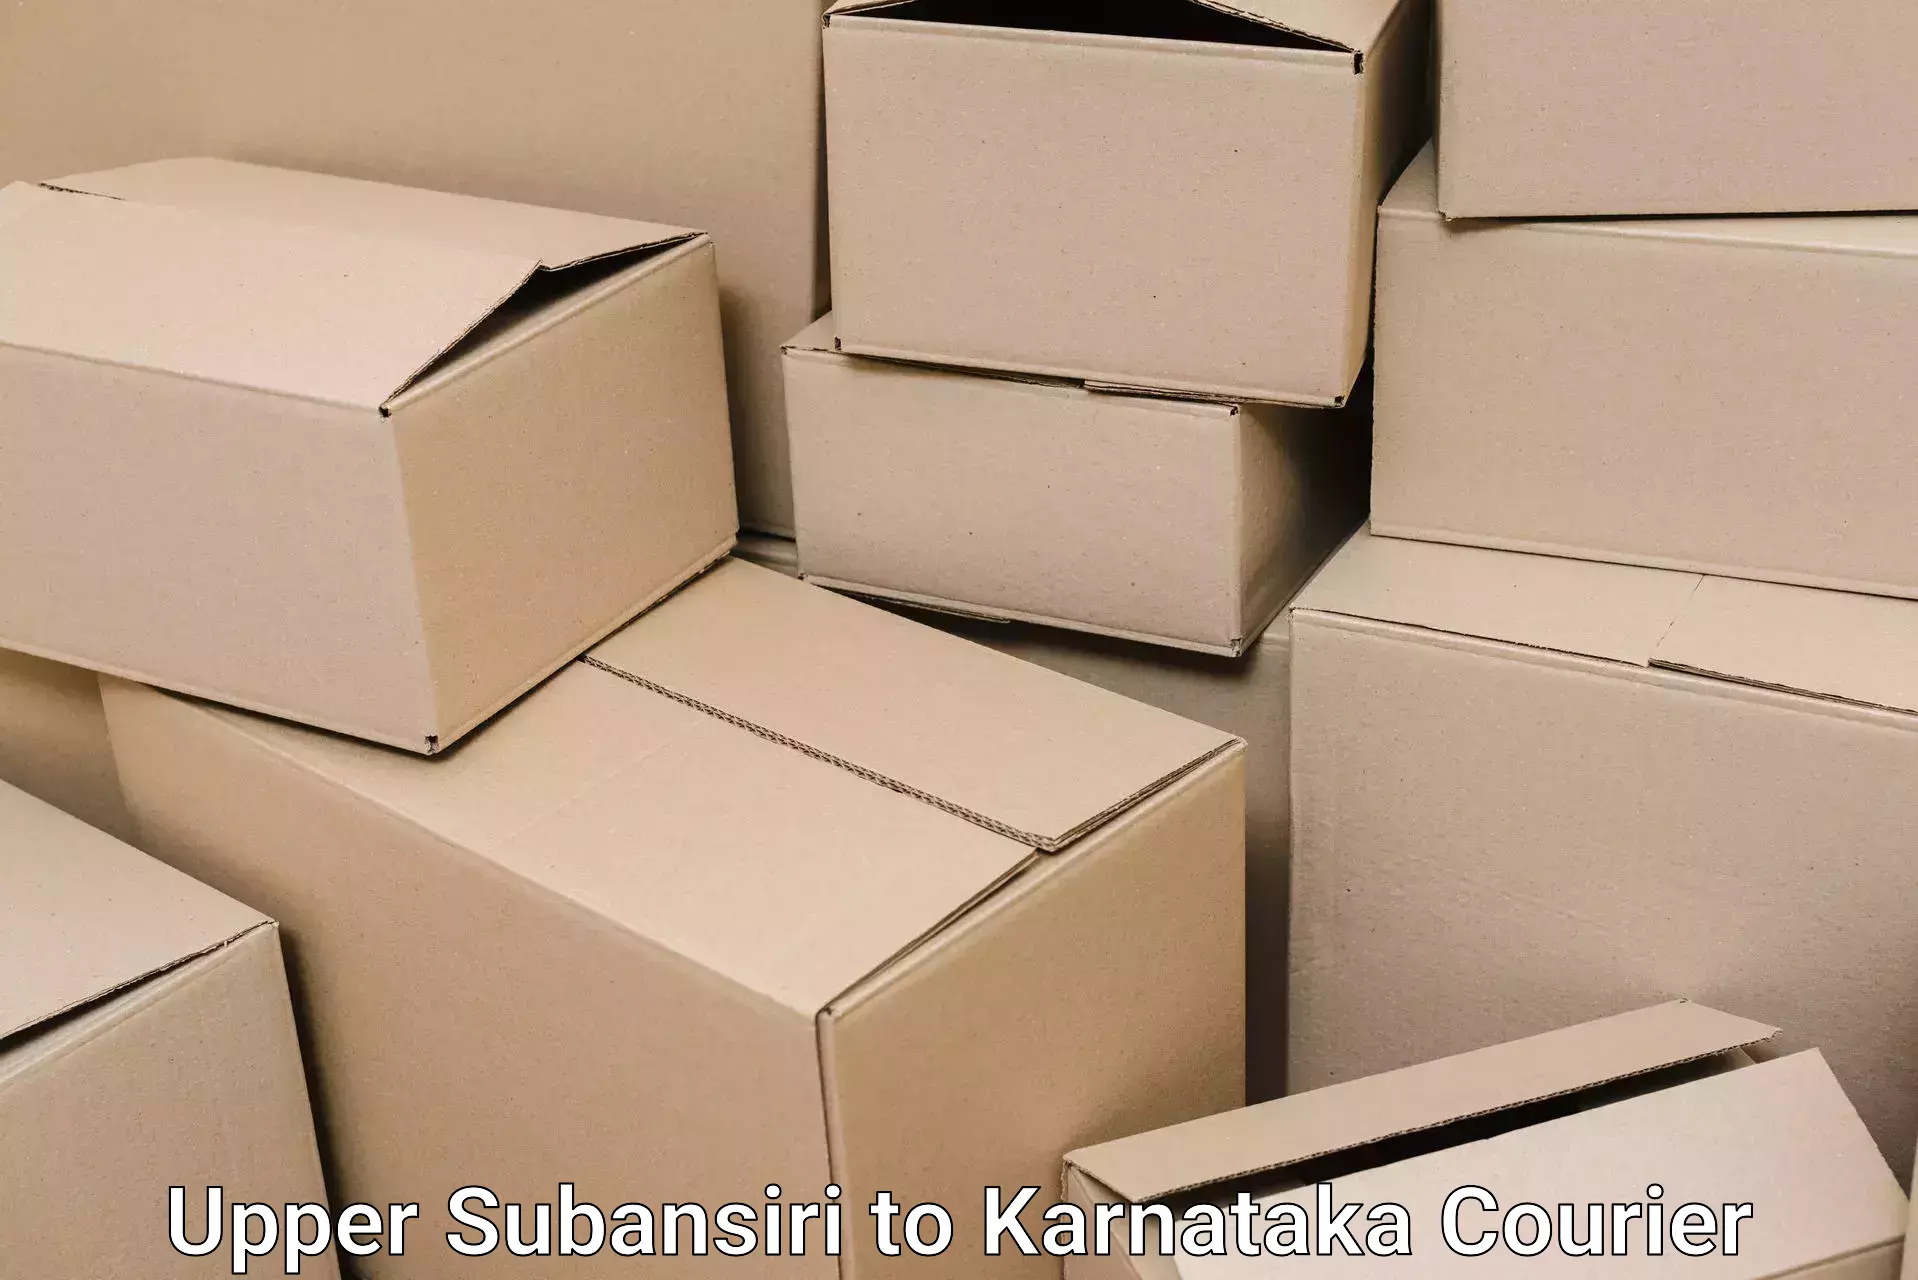 Efficient home goods movers Upper Subansiri to Thirthahalli